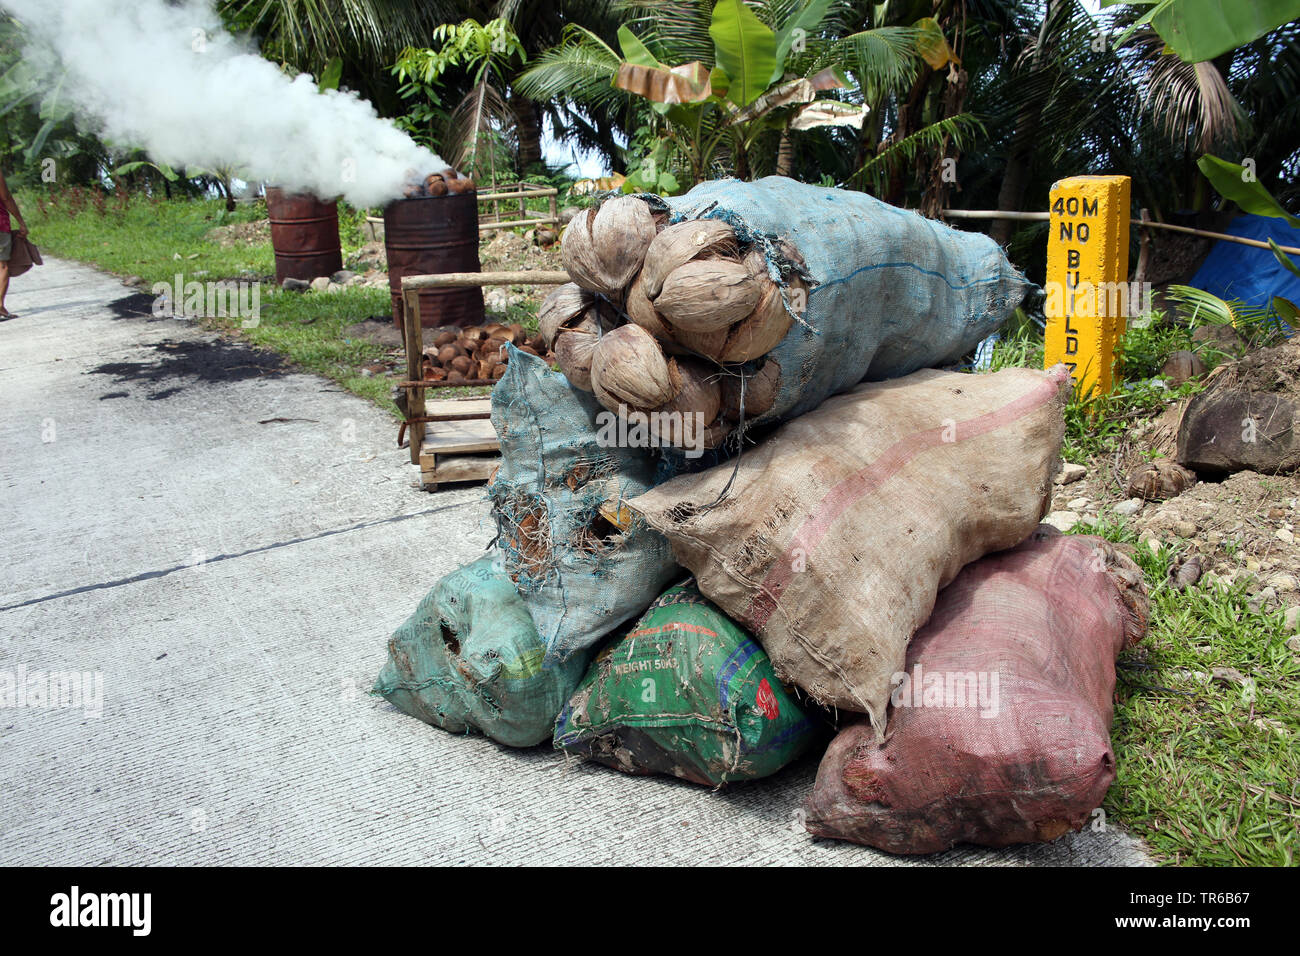 Carbone di legna dalla compilazione di gusci di noce di cocco sul ciglio della strada, Filippine, Sud Leyte, Panaon Isola, Pintuyan Foto Stock